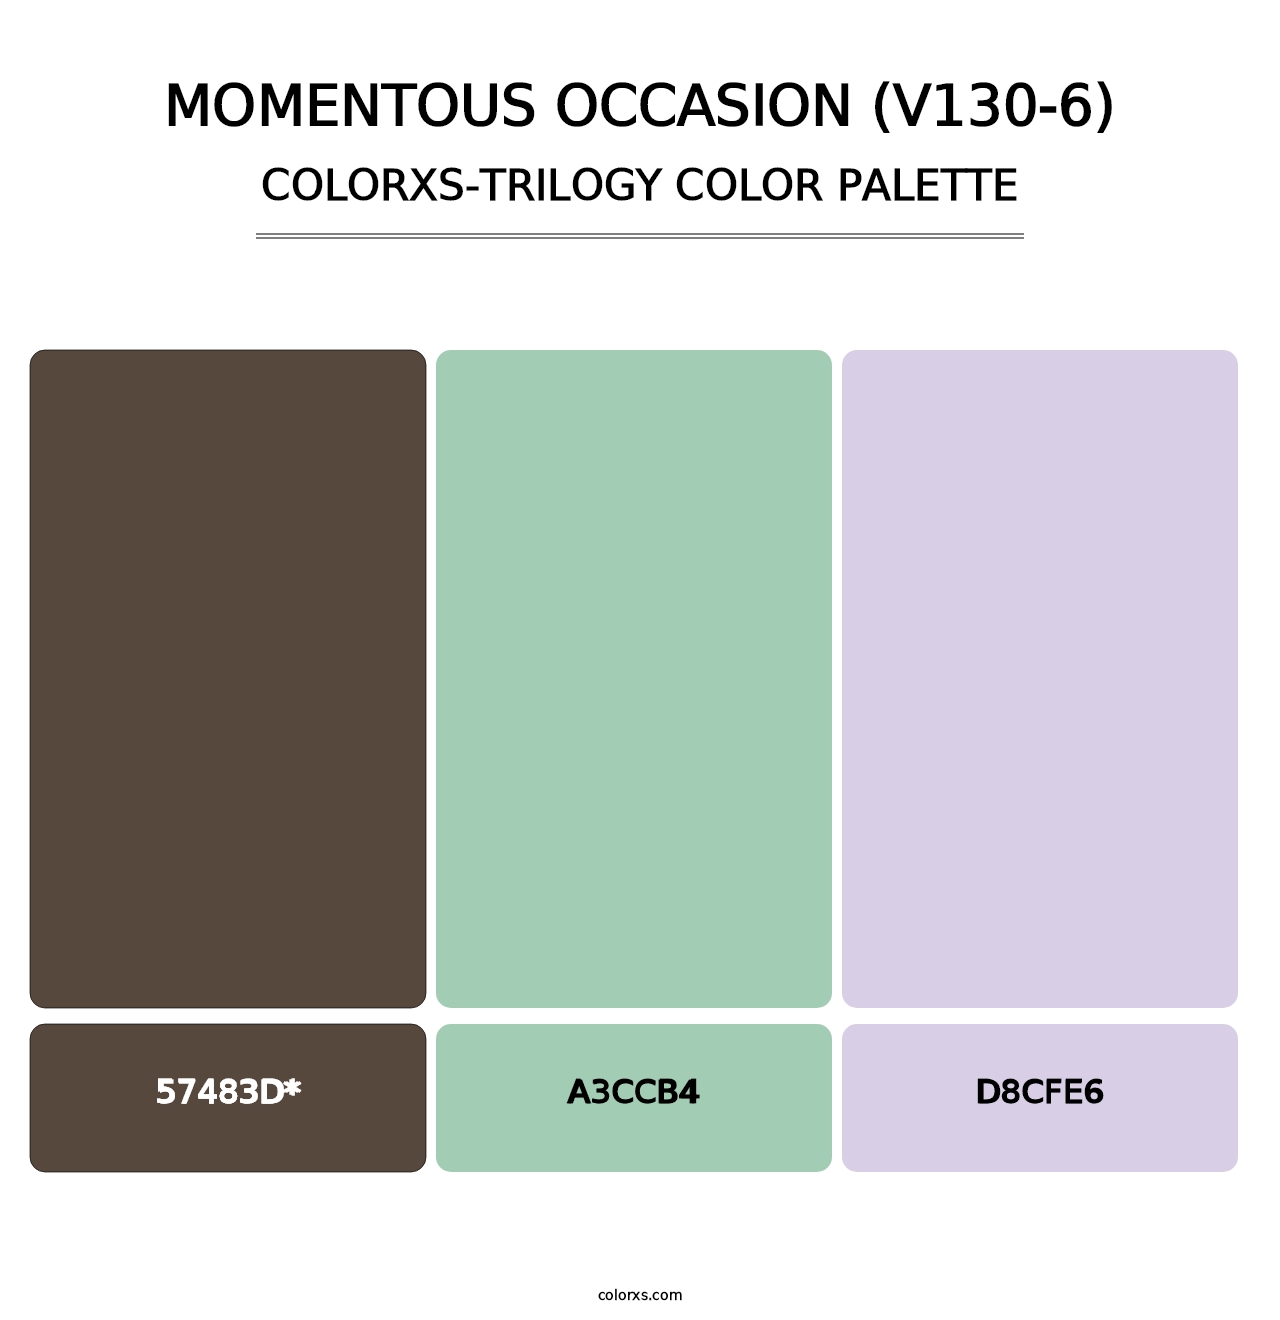 Momentous Occasion (V130-6) - Colorxs Trilogy Palette